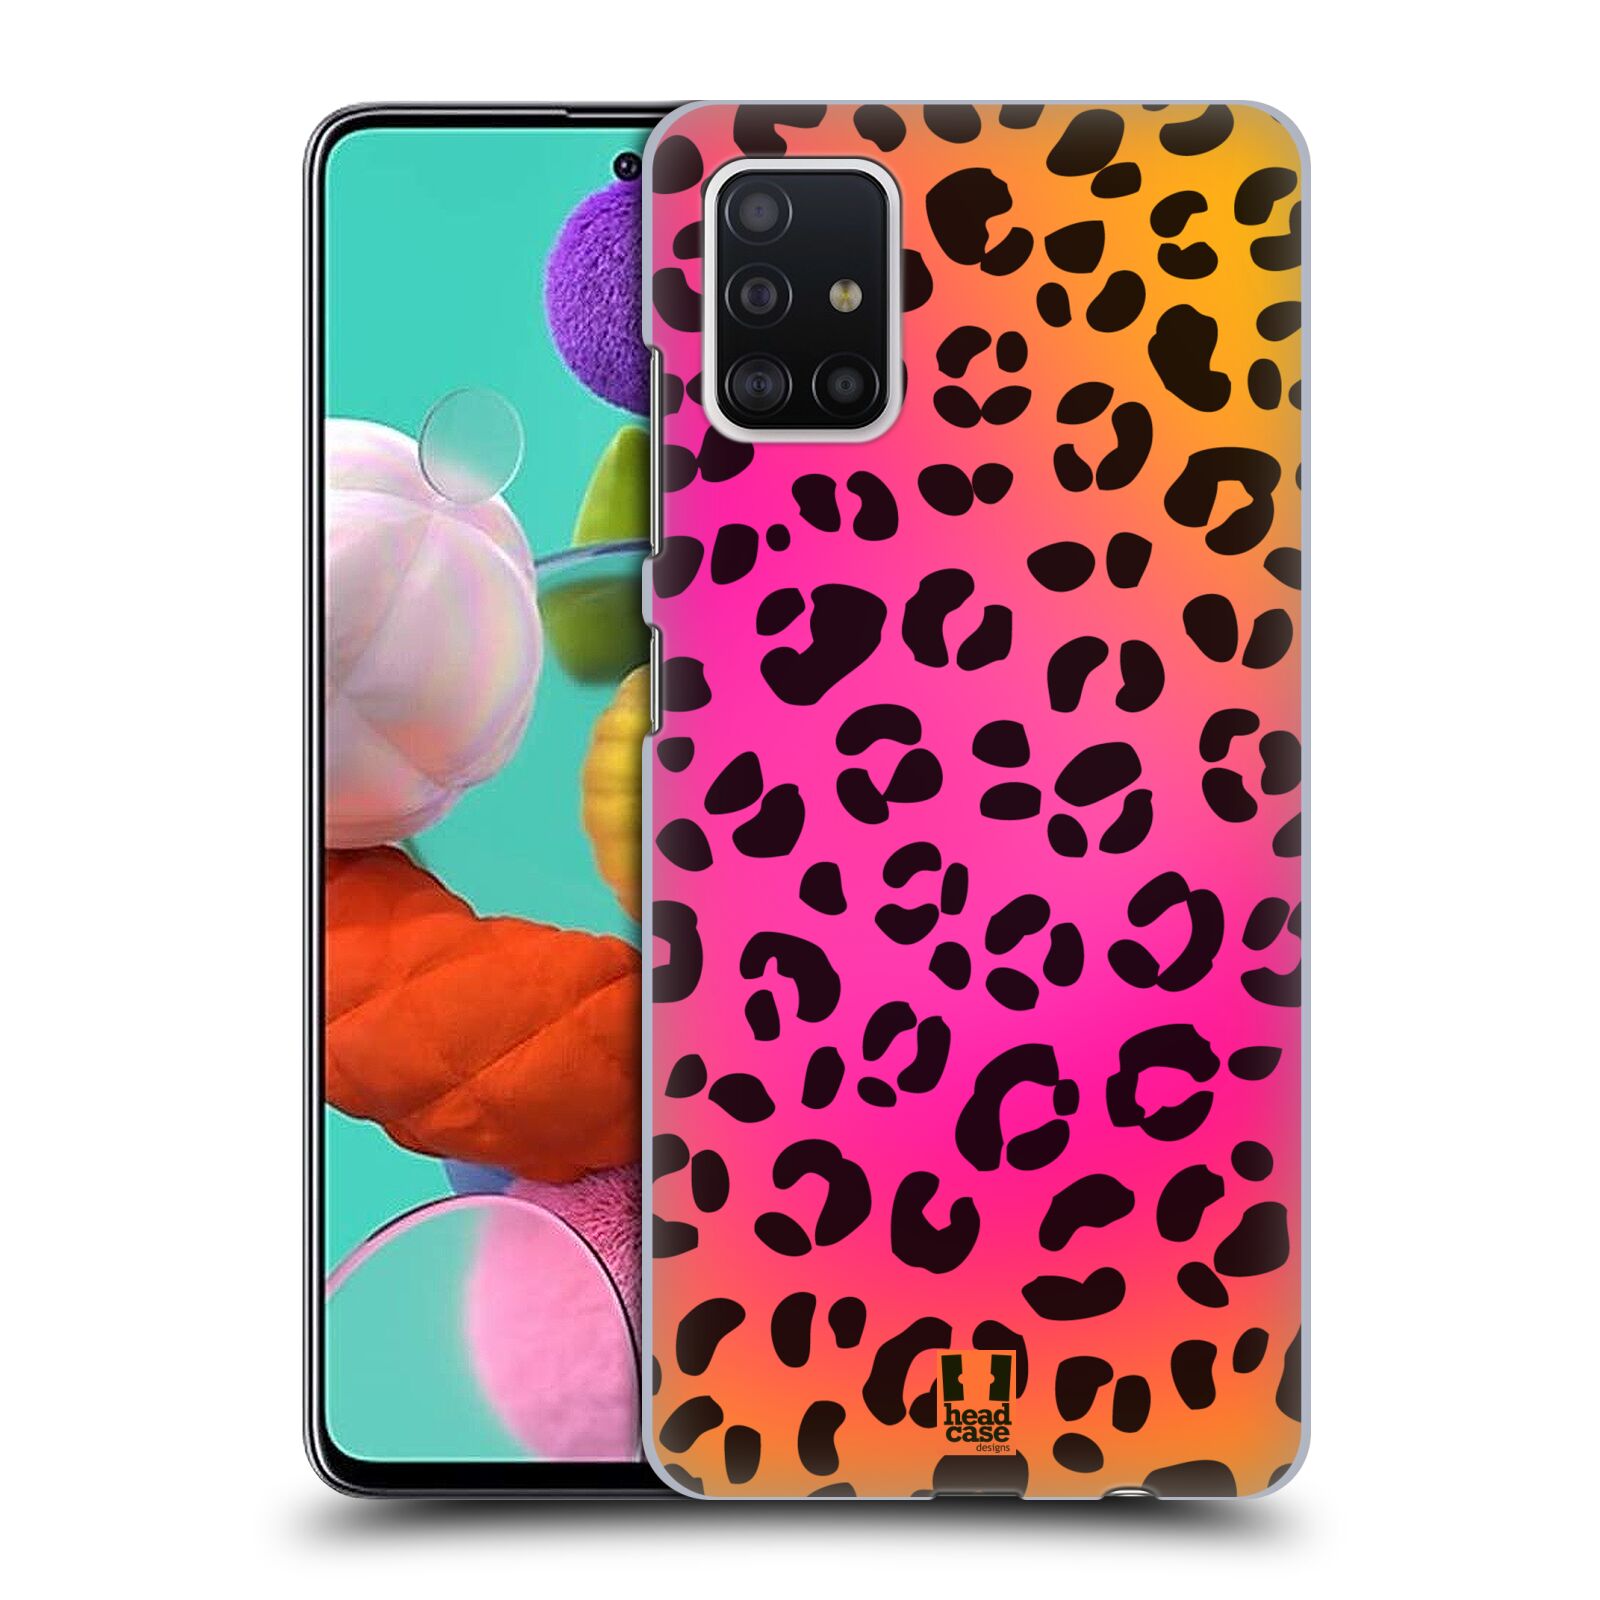 Pouzdro na mobil Samsung Galaxy A51 - HEAD CASE - vzor Divočina zvíře růžový leopard